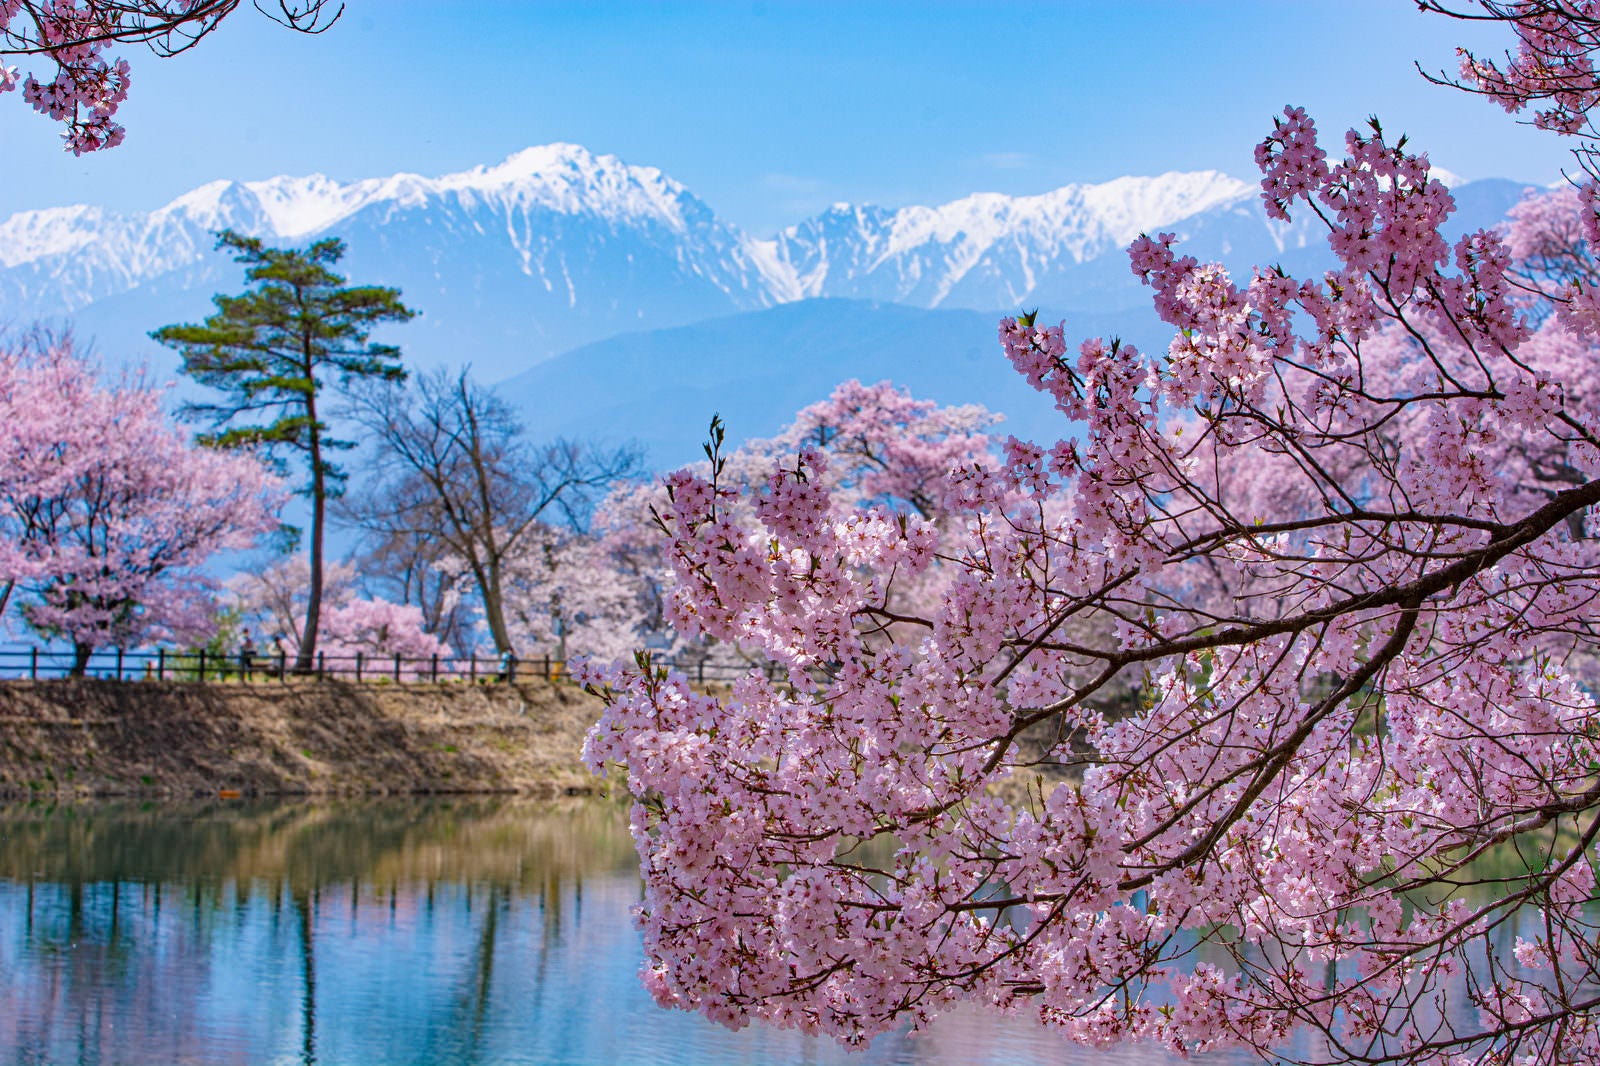 「残雪輝く山々と桜が彩る六道の堤の春」の写真